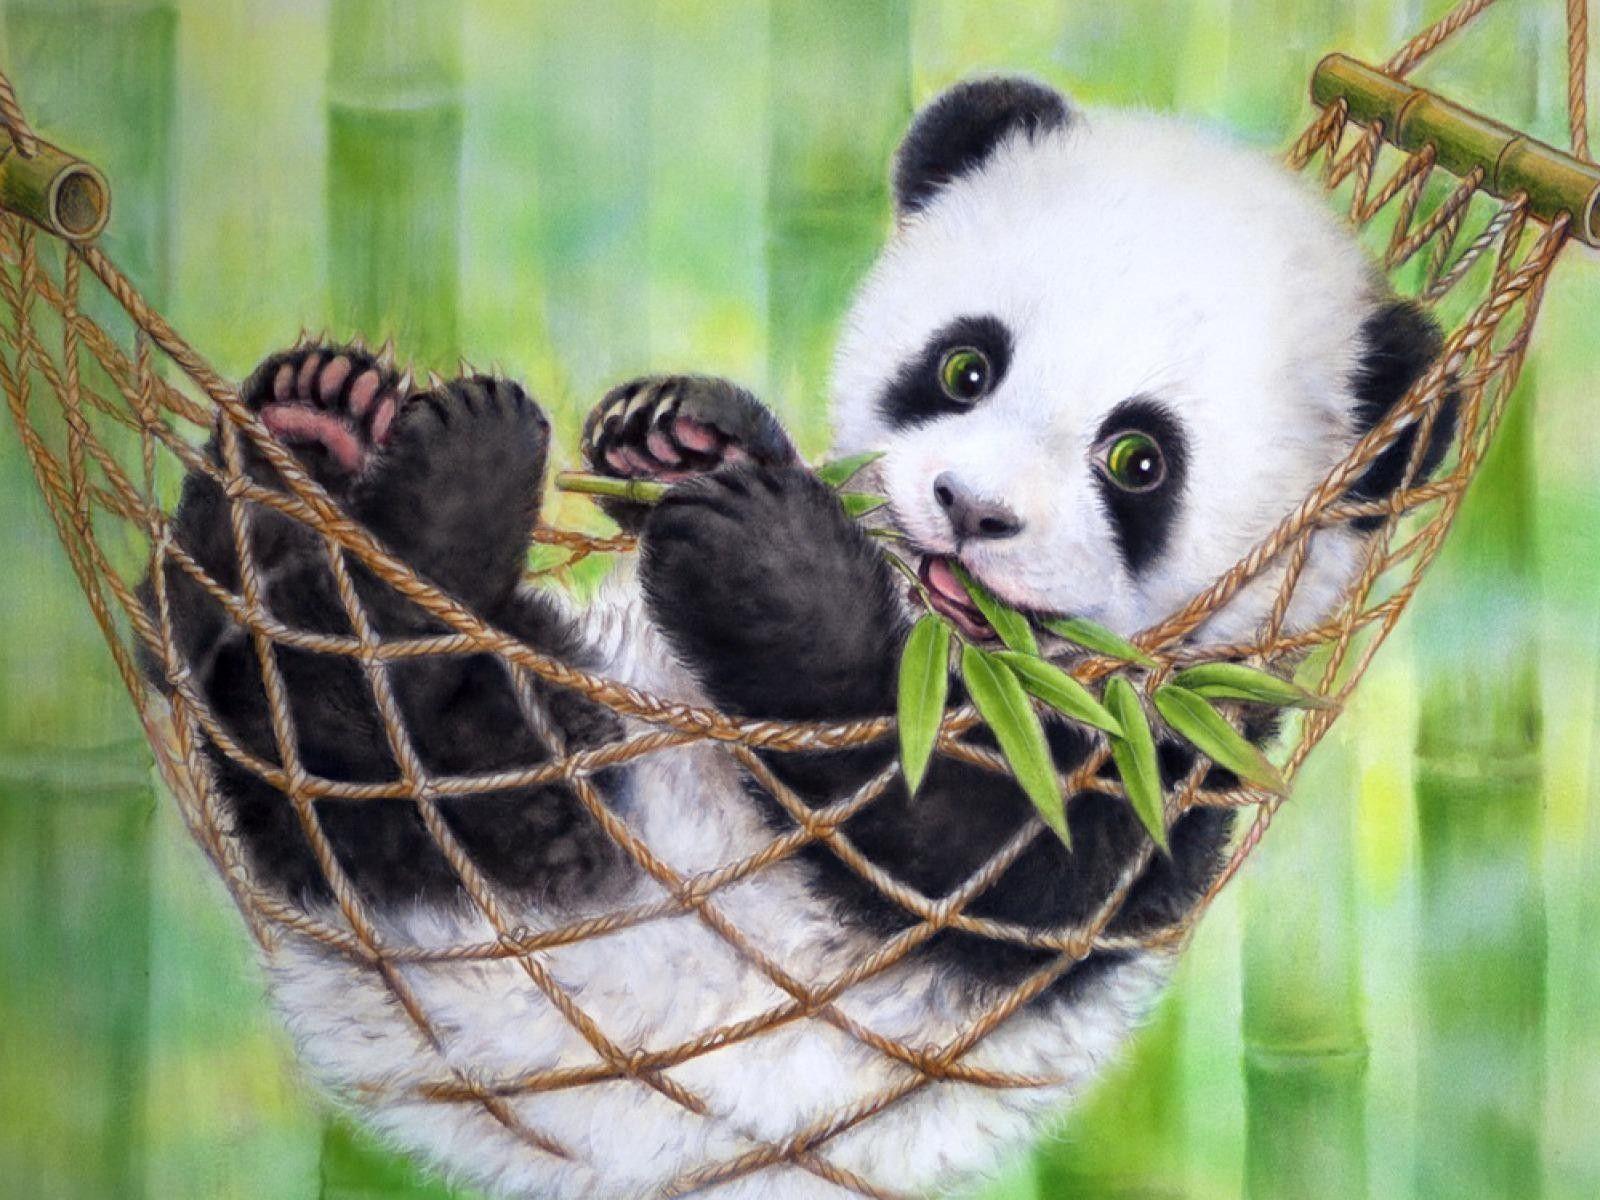 Gambar Wallpapers Tumblr Panda - Wallpaper Cave